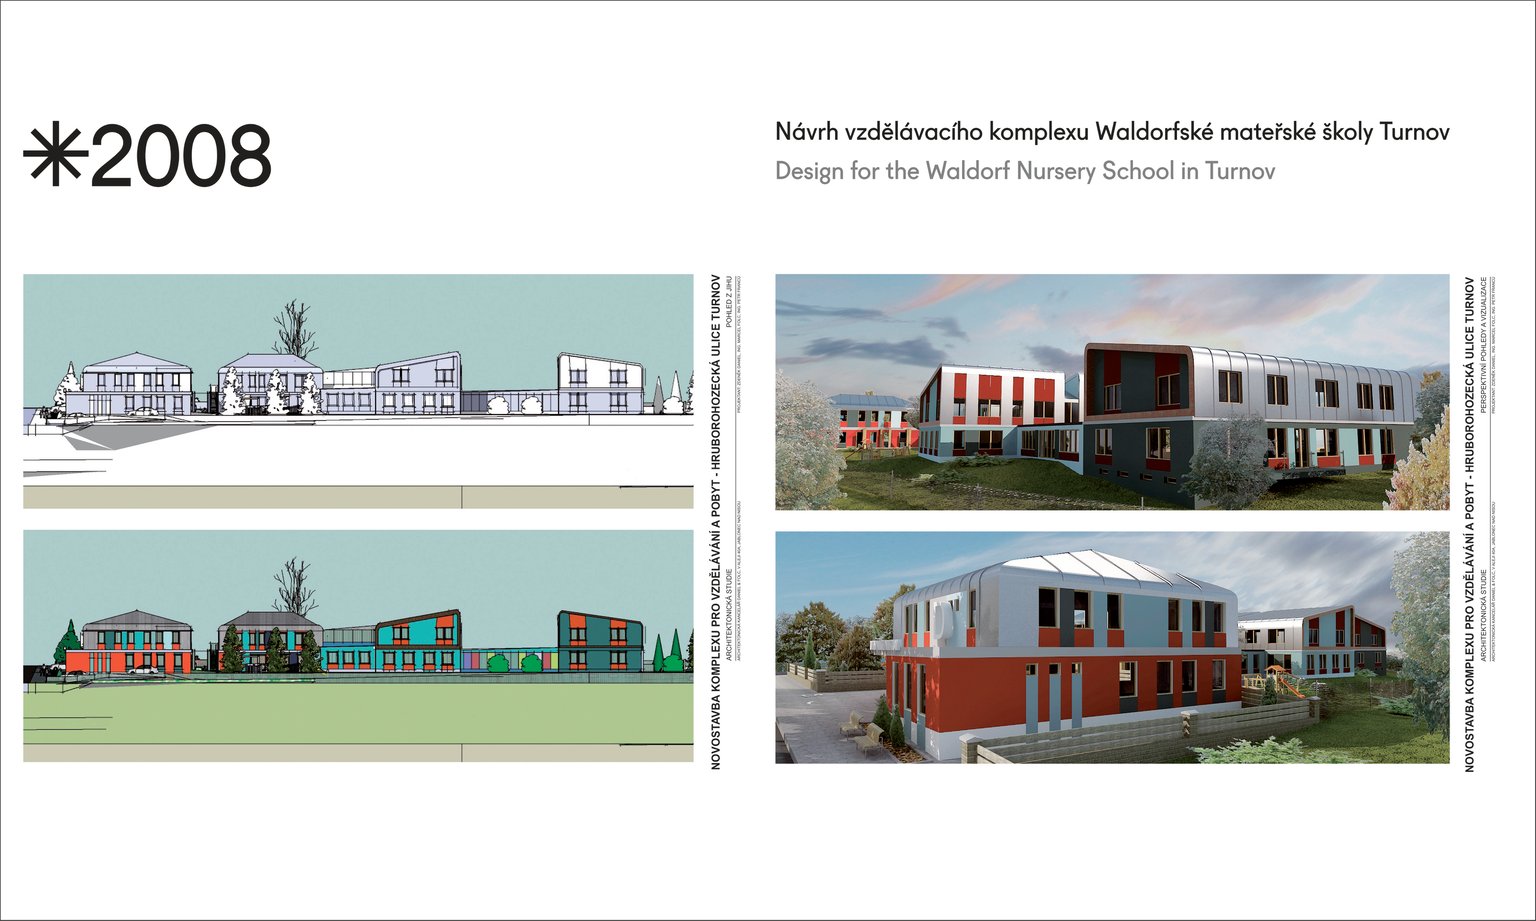 Návrh vzdělávacího komplexu Waldorské mateřské školy Turnov